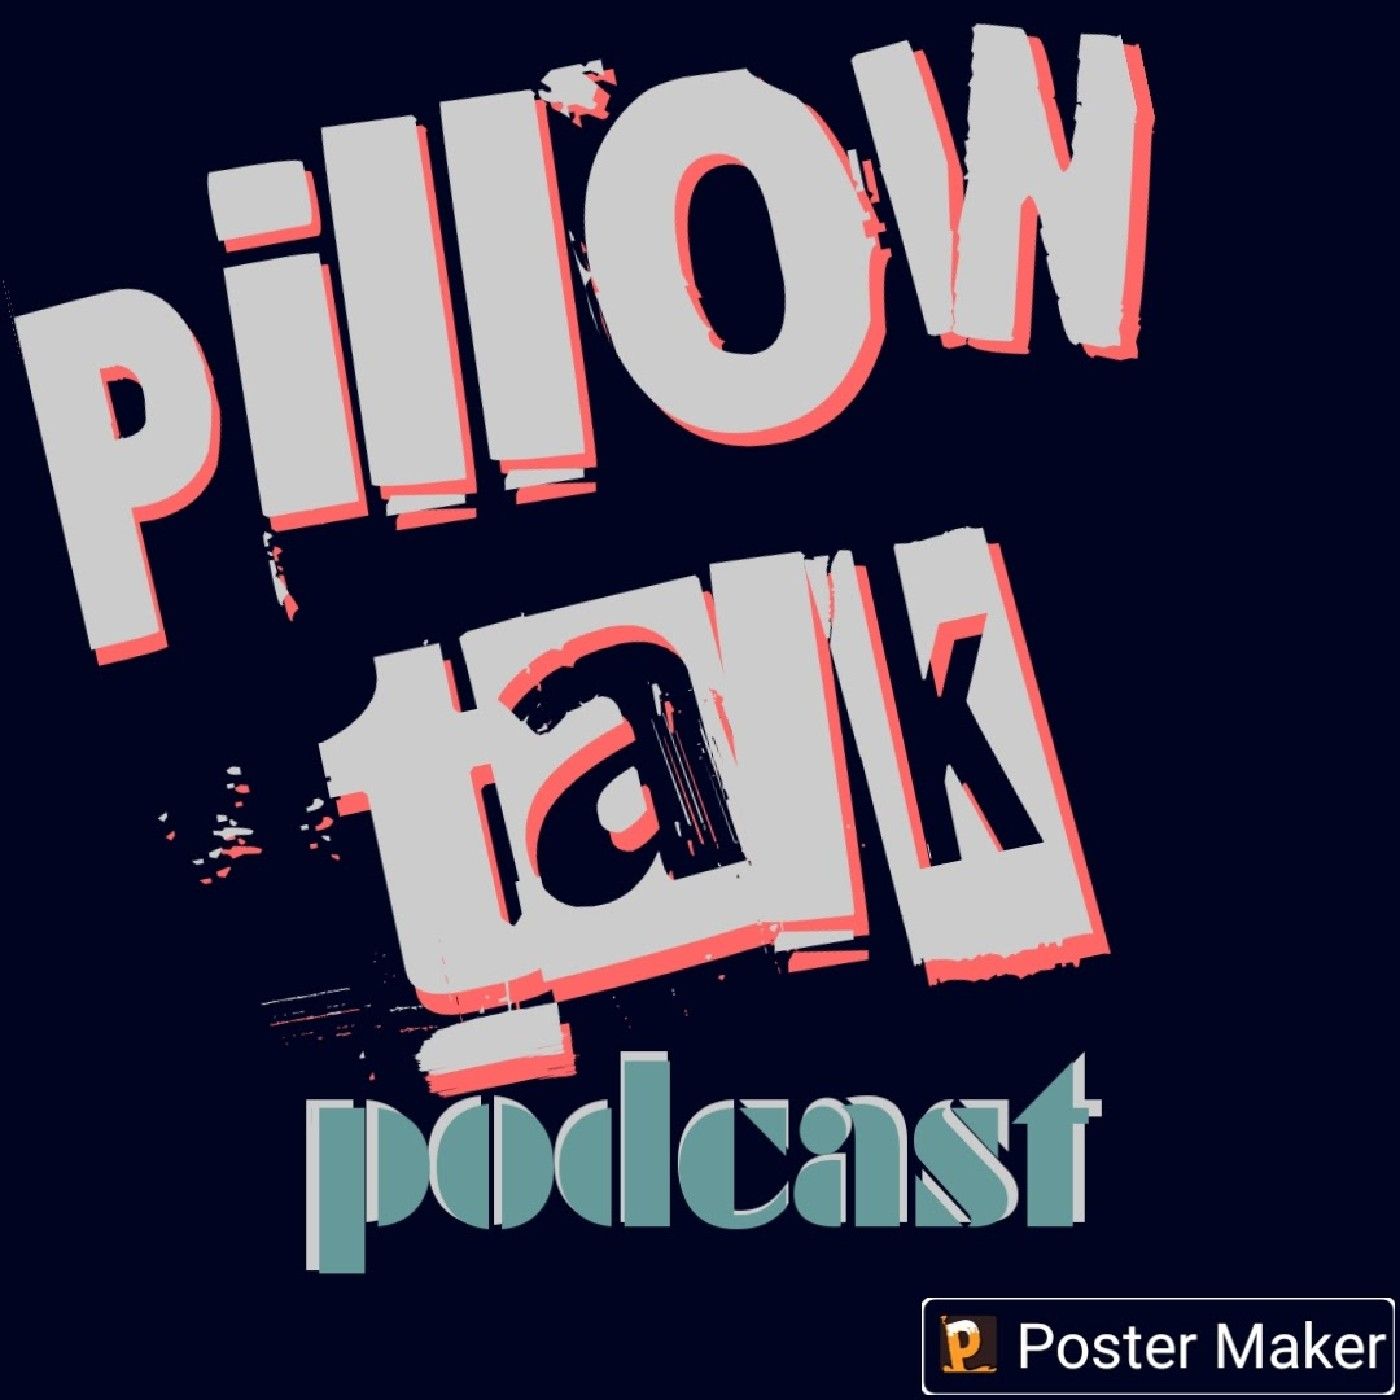 Episode 2 - PILLOW TALK